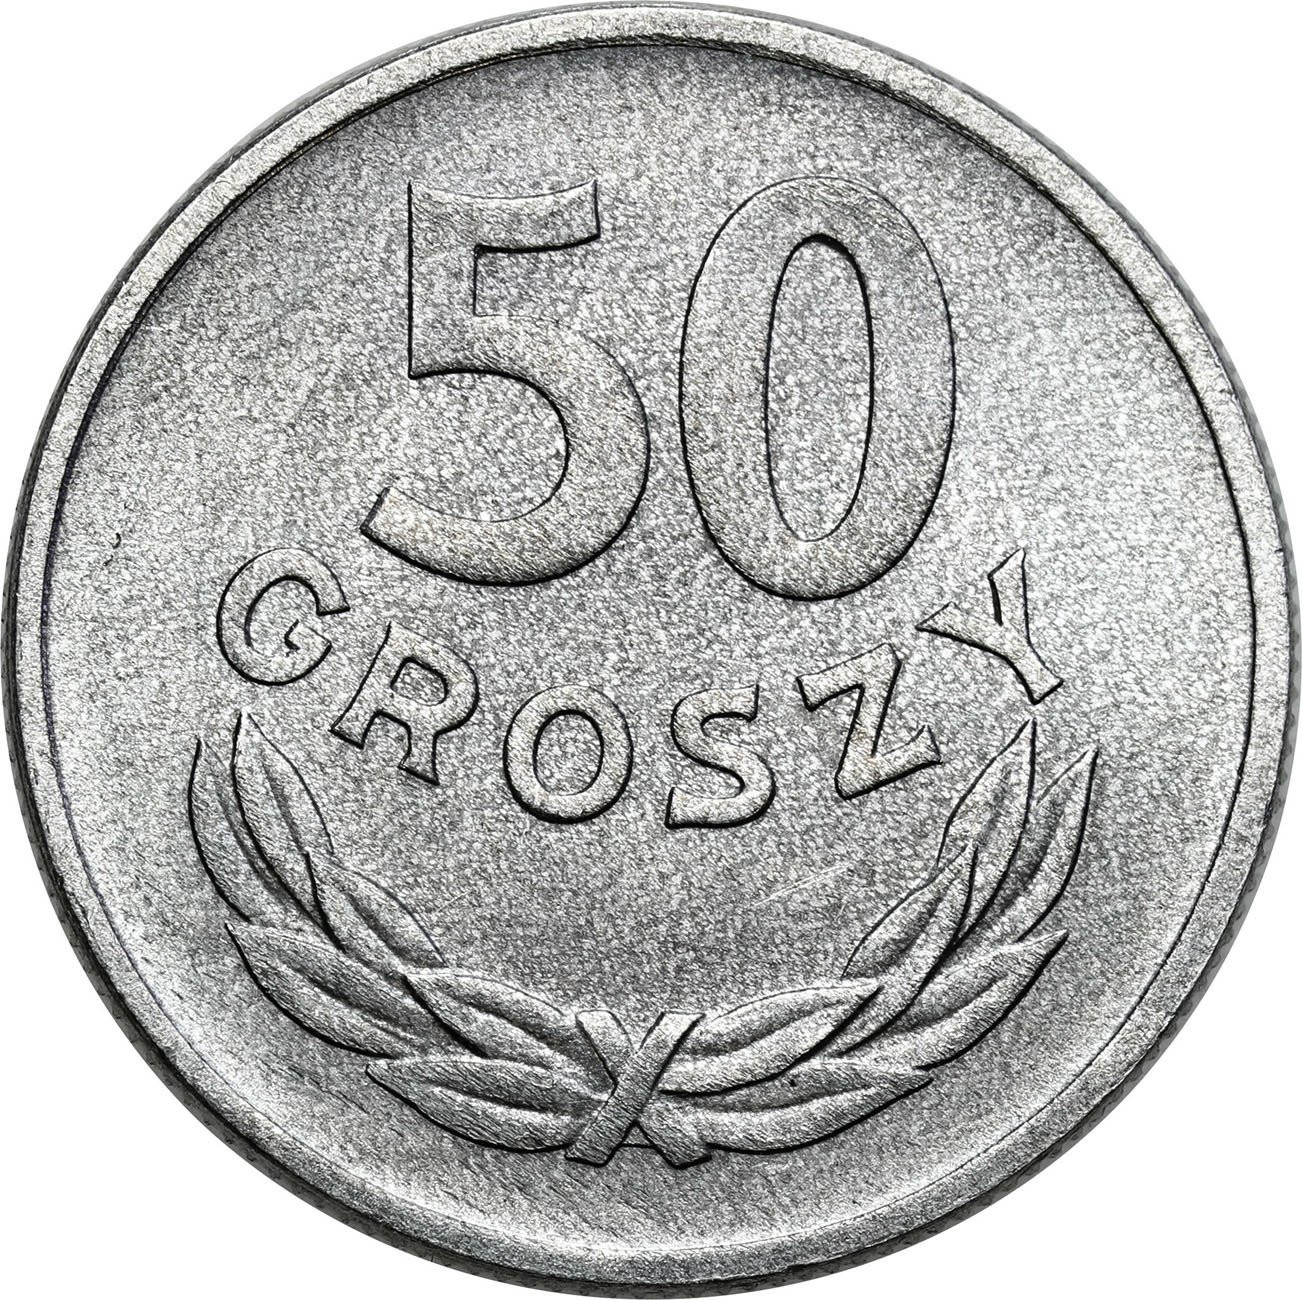 PRL. 50 groszy 1957 - RZADKI ROCZNIK